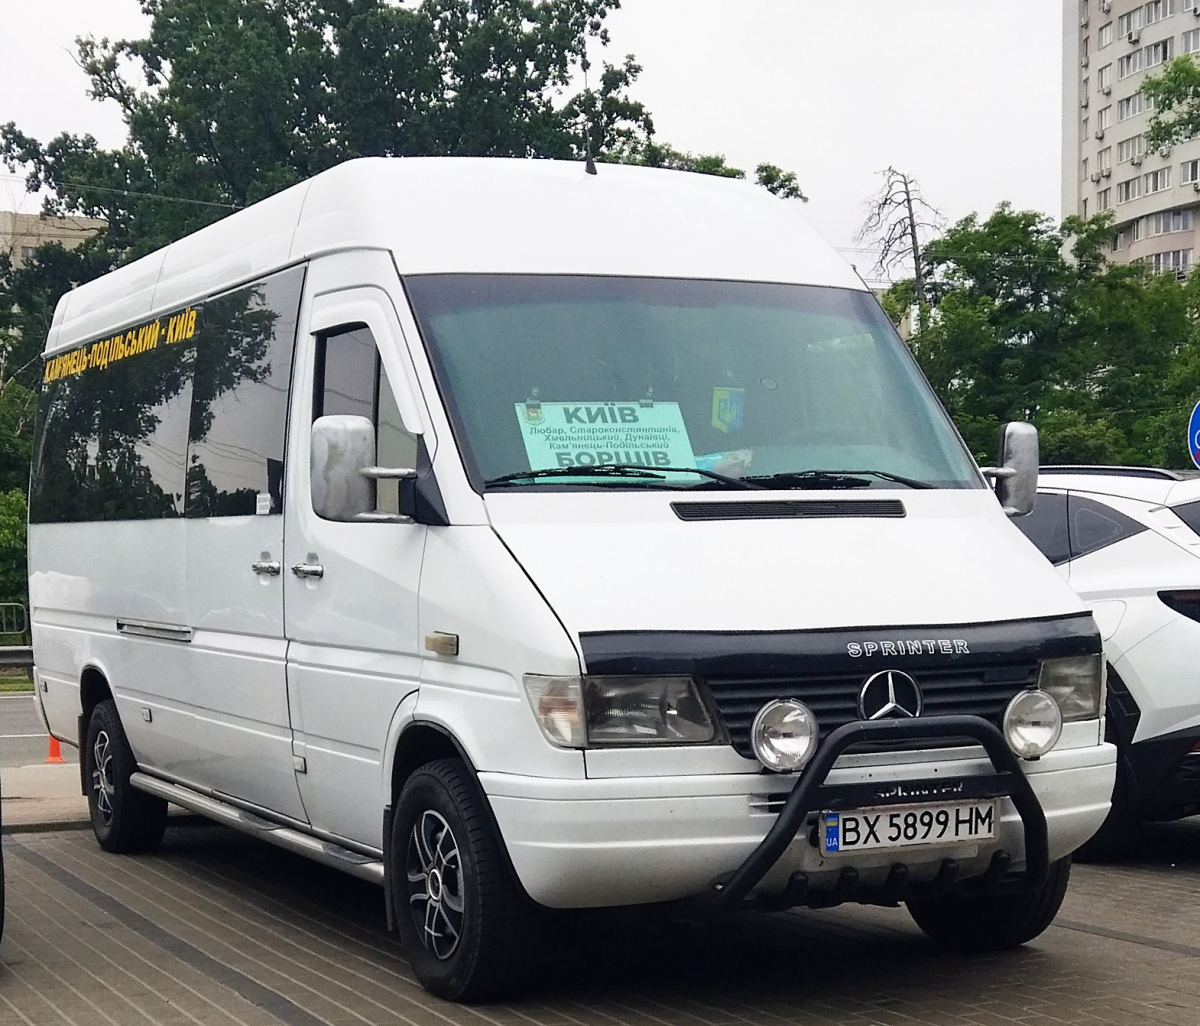 Киев. Mercedes-Benz Sprinter BX5899HM